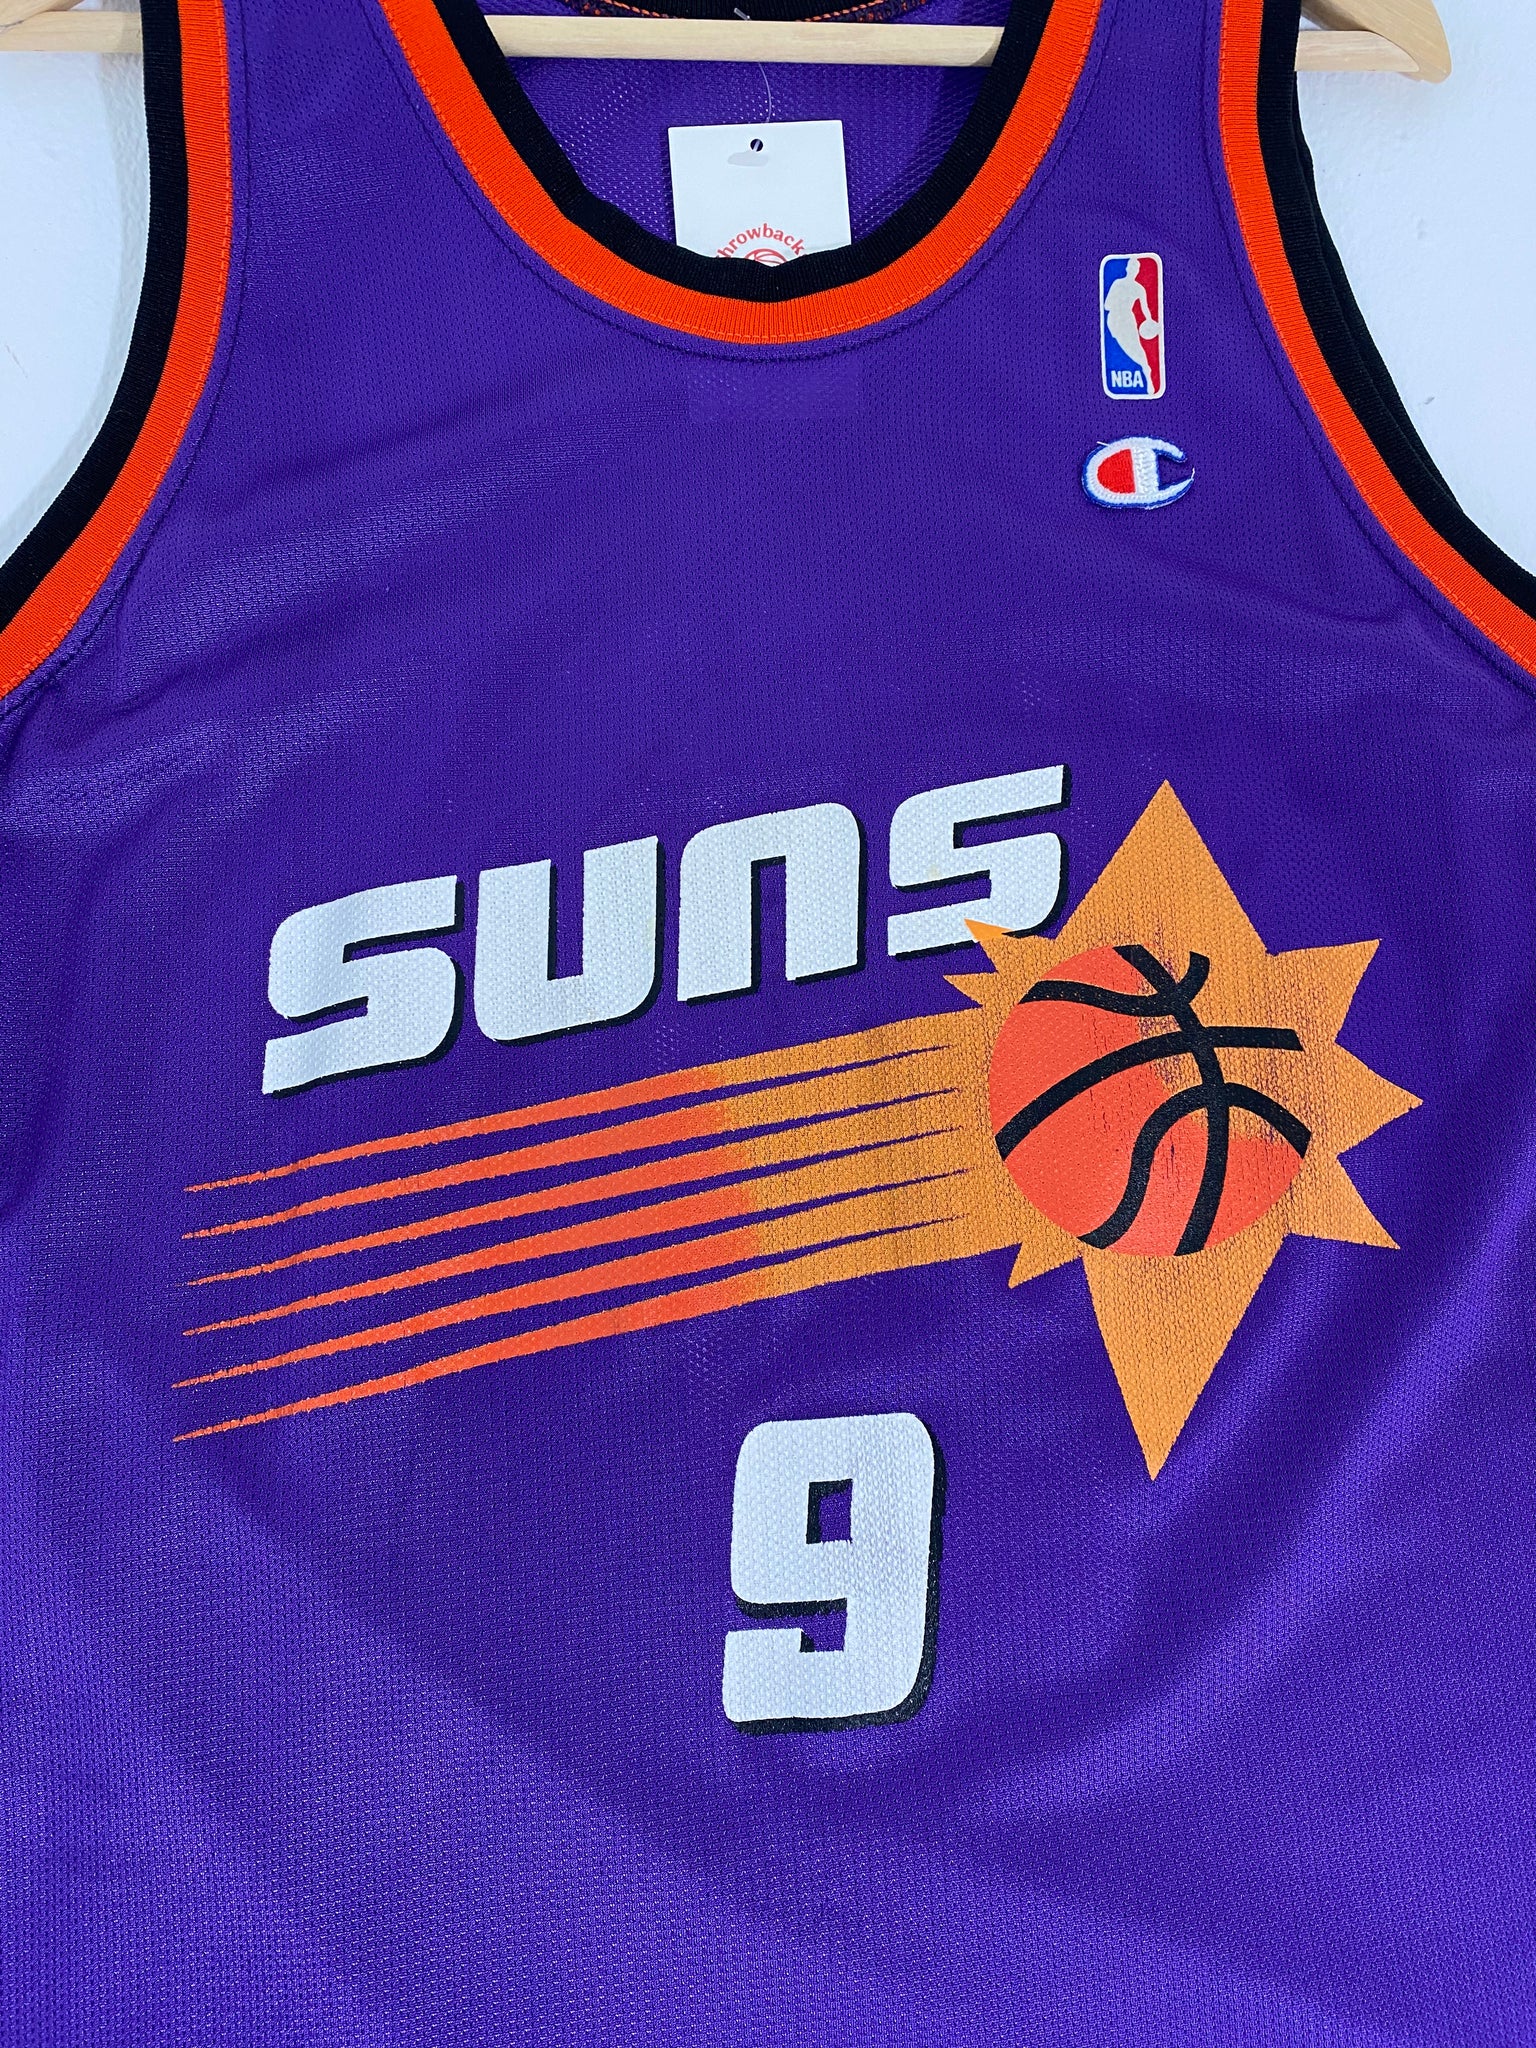 Phoenix Suns Dan Majerle Jerseys, Dan Majerle Shirts, Dan Majerle Gear